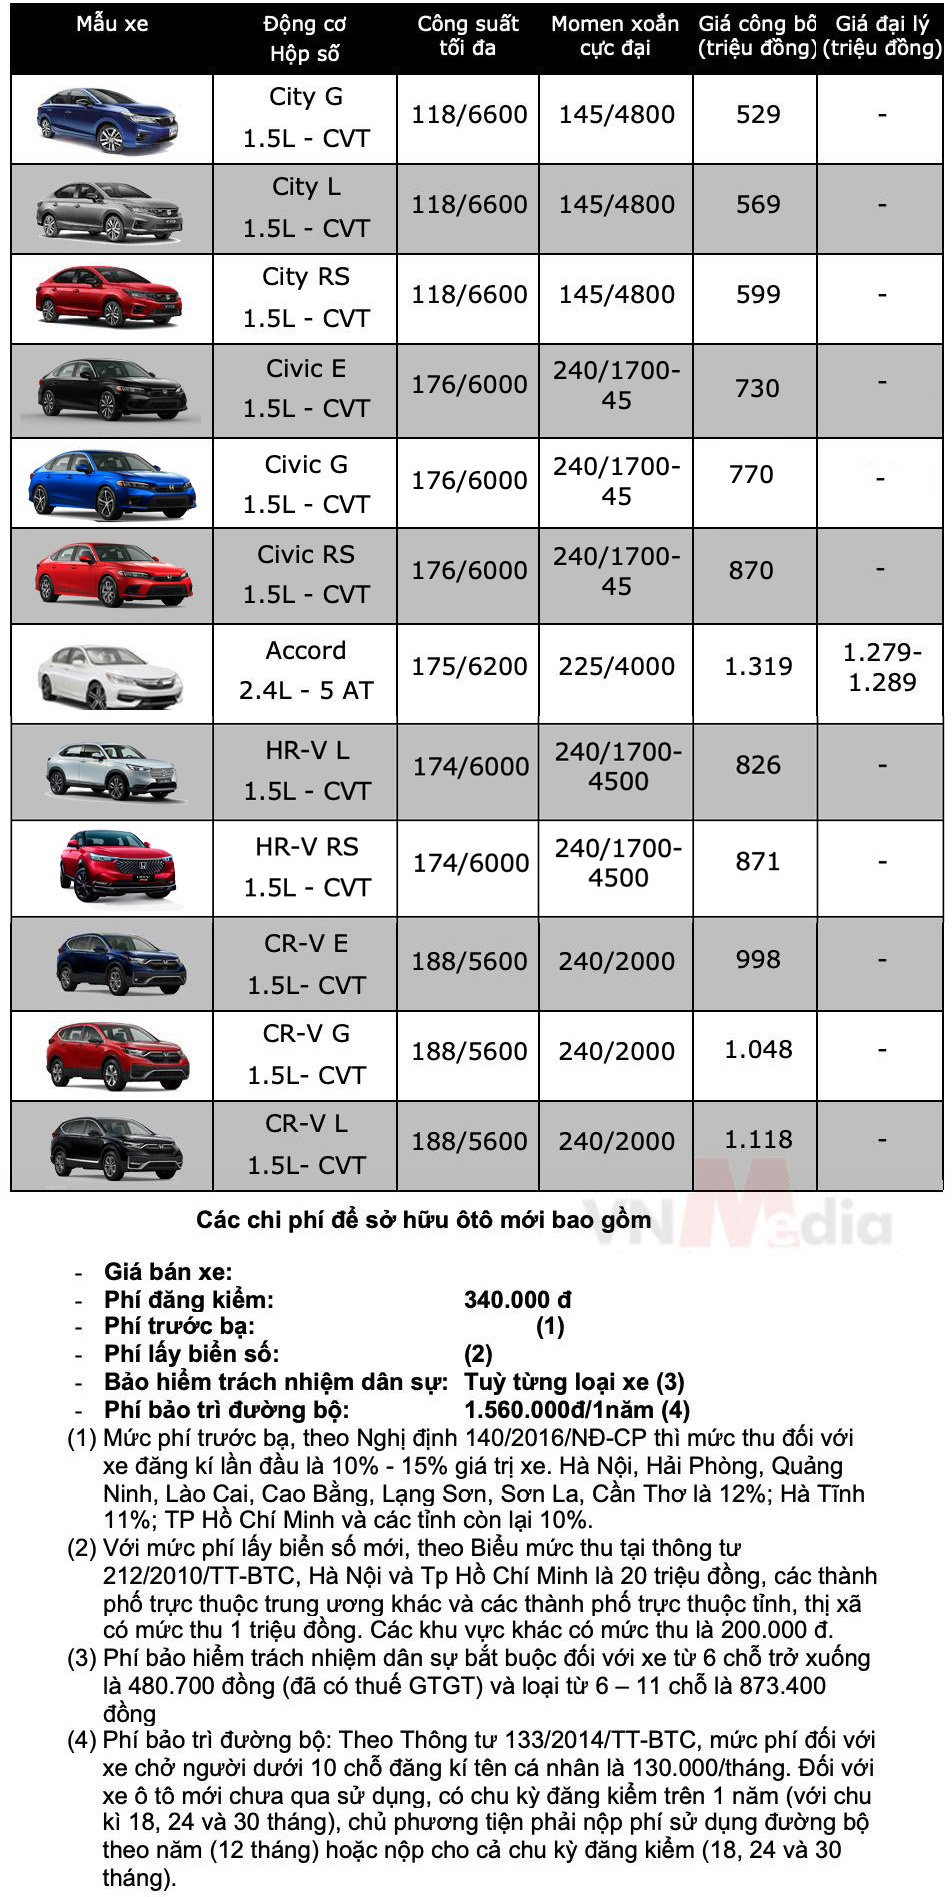 Bảng giá ô tô Honda tháng 11: Honda CR-V nhận ưu đãi khủng, lên tới hơn 100 triệu đồng - Ảnh 2.